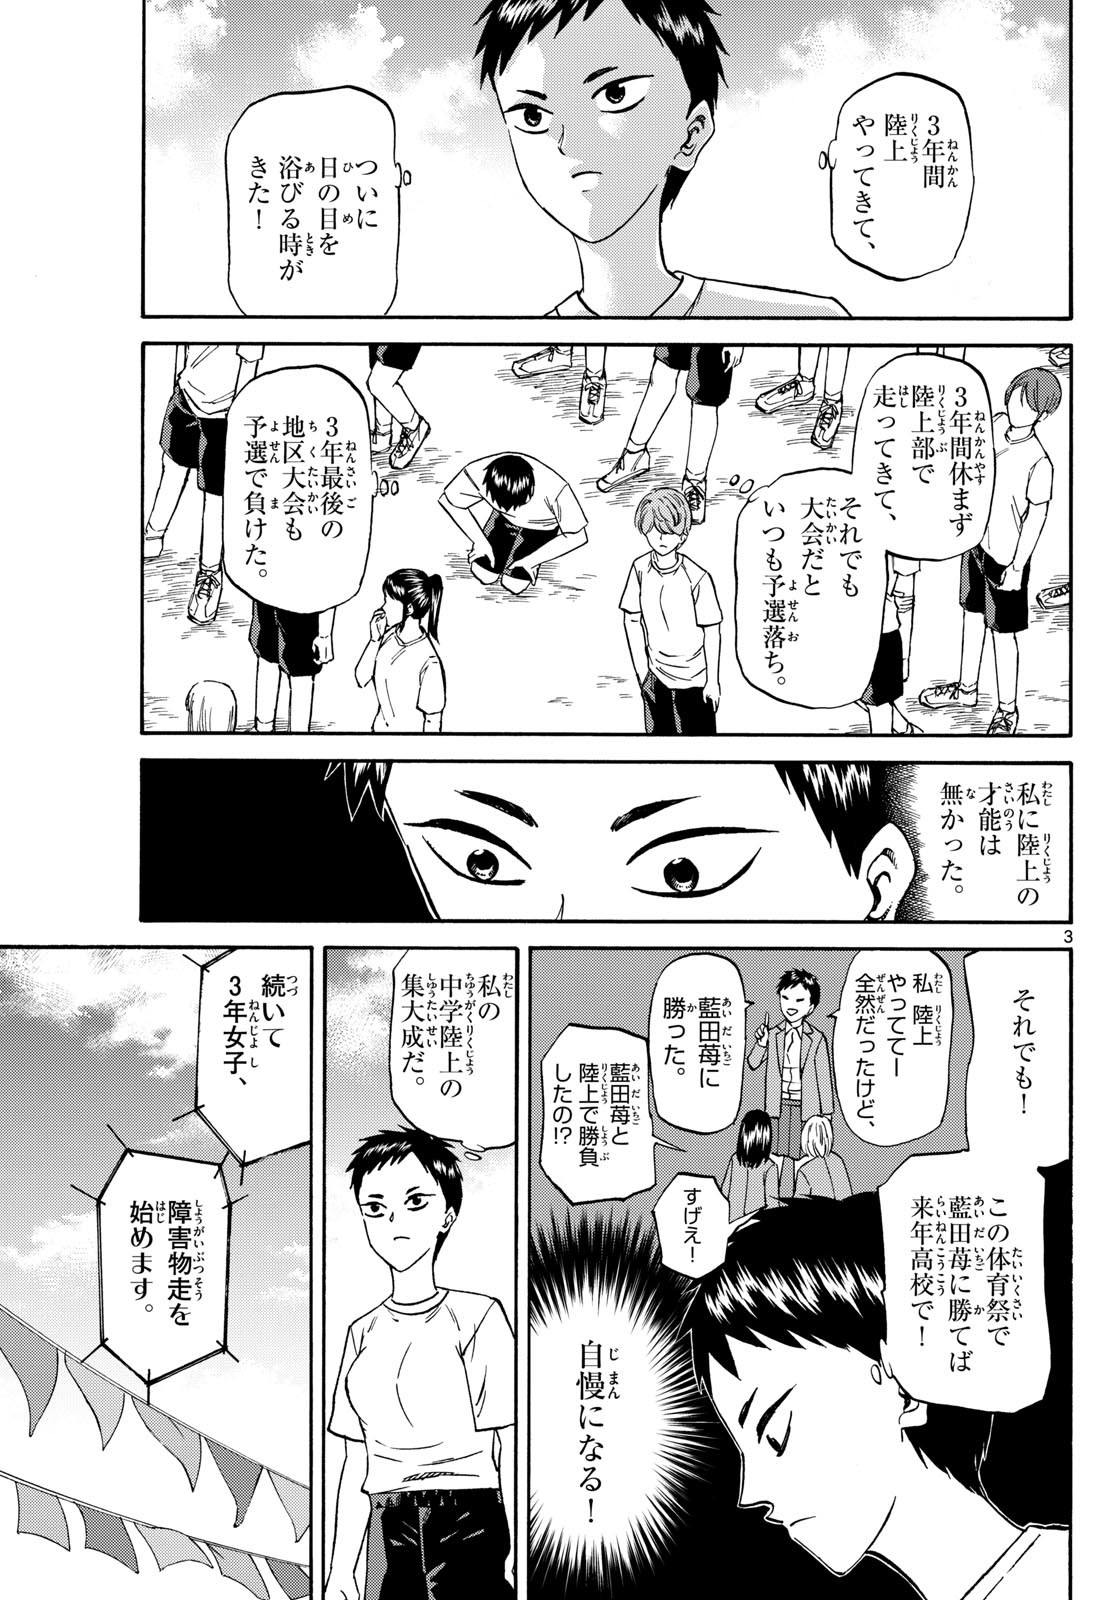 Ryu-to-Ichigo - Chapter 158 - Page 3